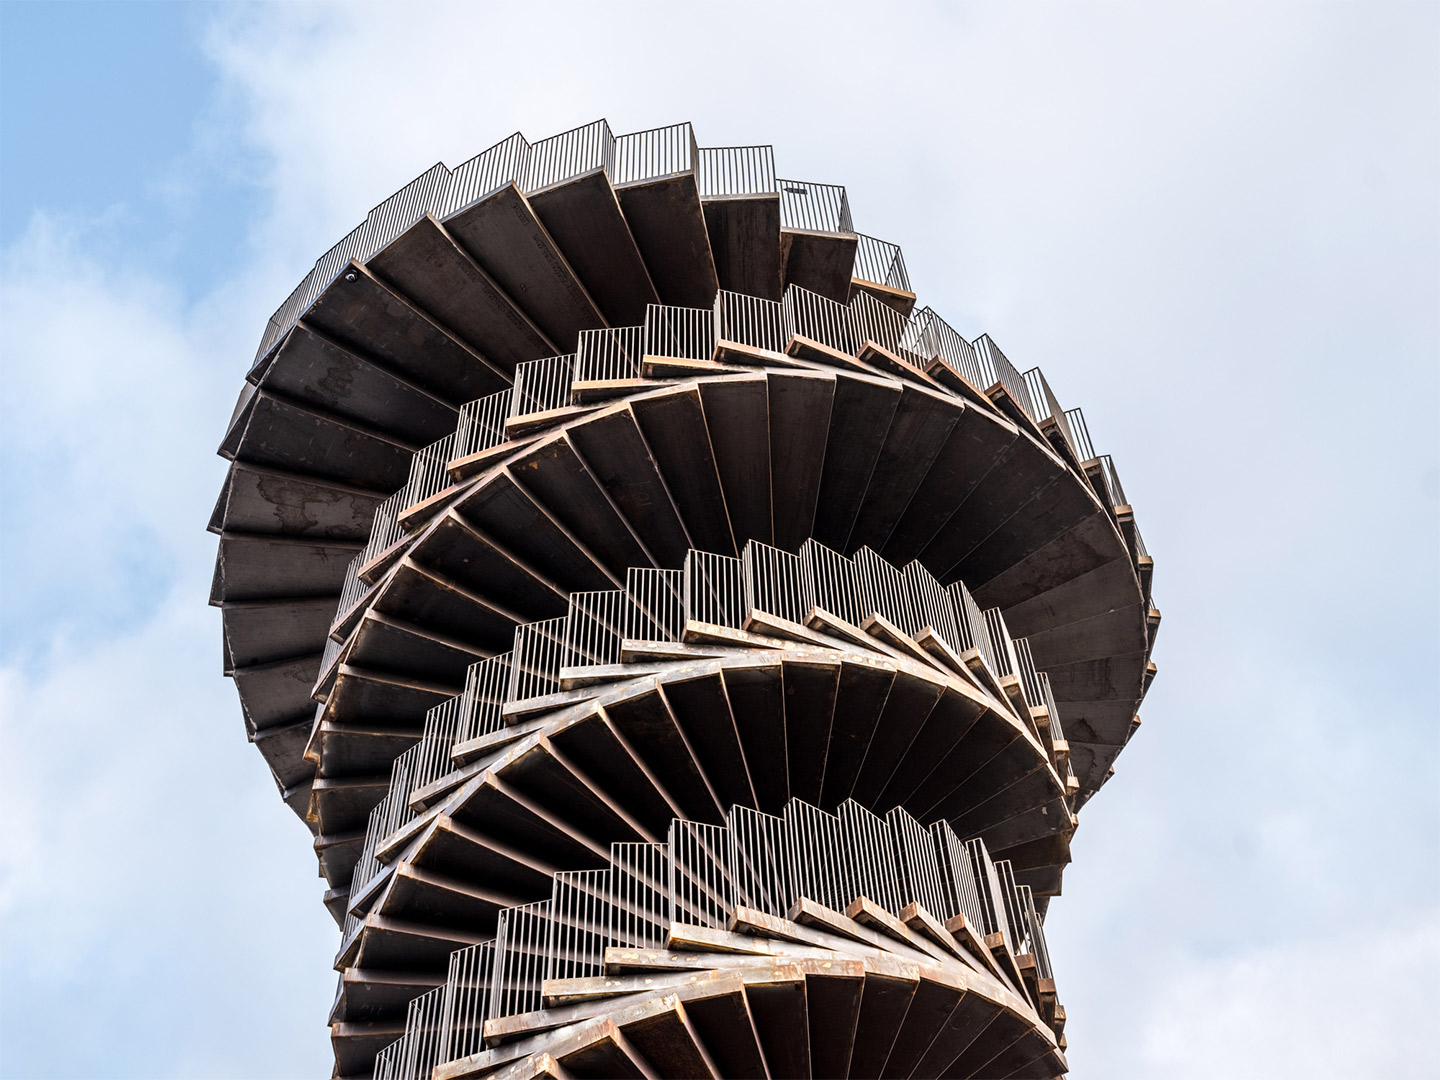 Marsk Tower in Denmark by Bjarke Ingels Group BIG